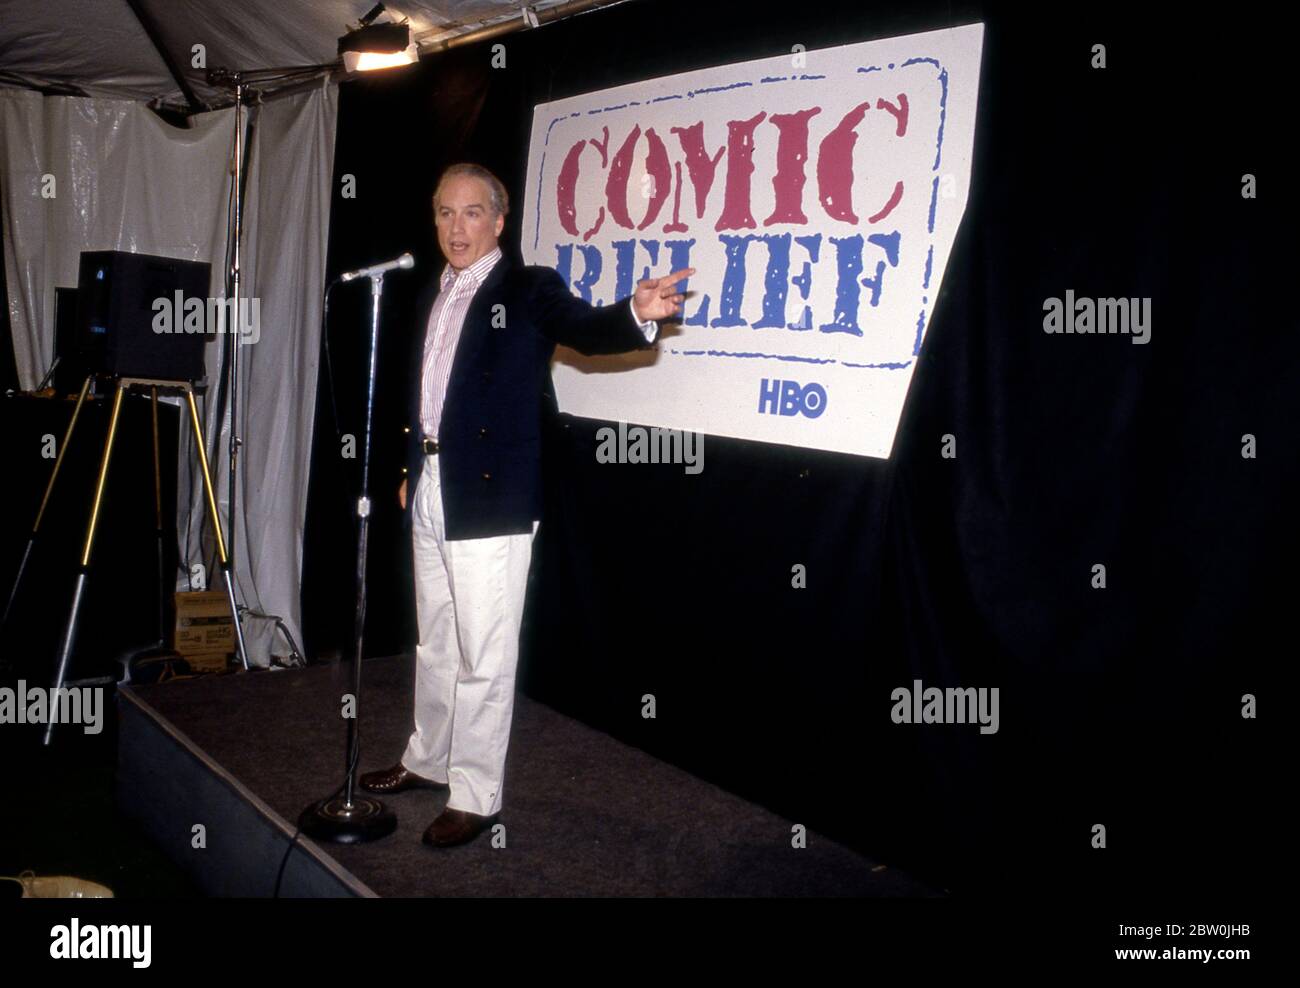 L'attore Richard Dreyfuss che aiuta a promuovere il beneficio di theComic releif per i senzatetto a Los Angeles, 1986 Foto Stock